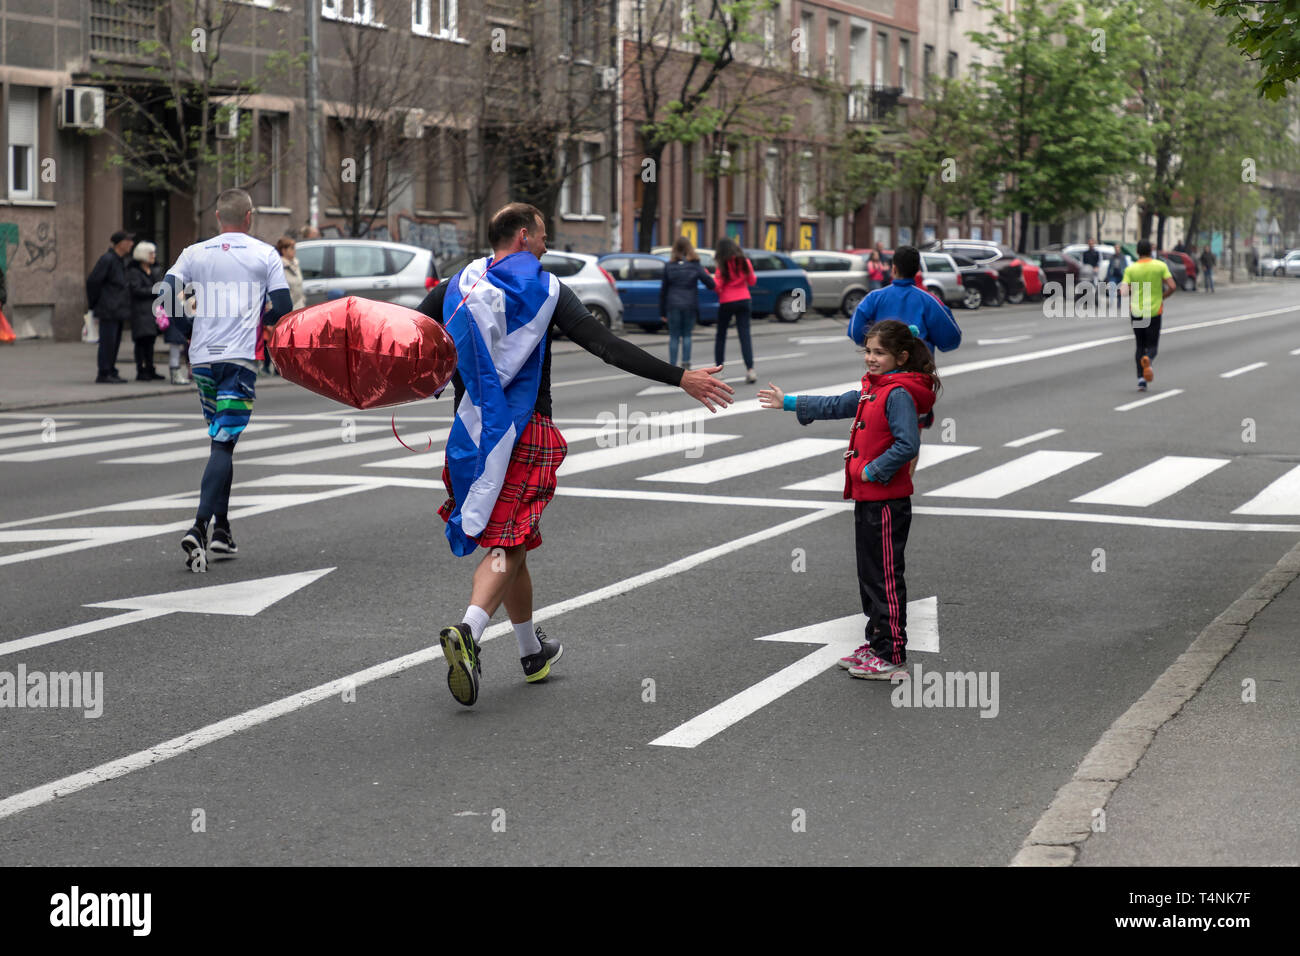 Serbien, 14. April 2019: Schottischer gentleman tragen Karneval Kleid in eine festliche Stimmung und Gruß das Publikum am 32. Belgrad Marathon Stockfoto